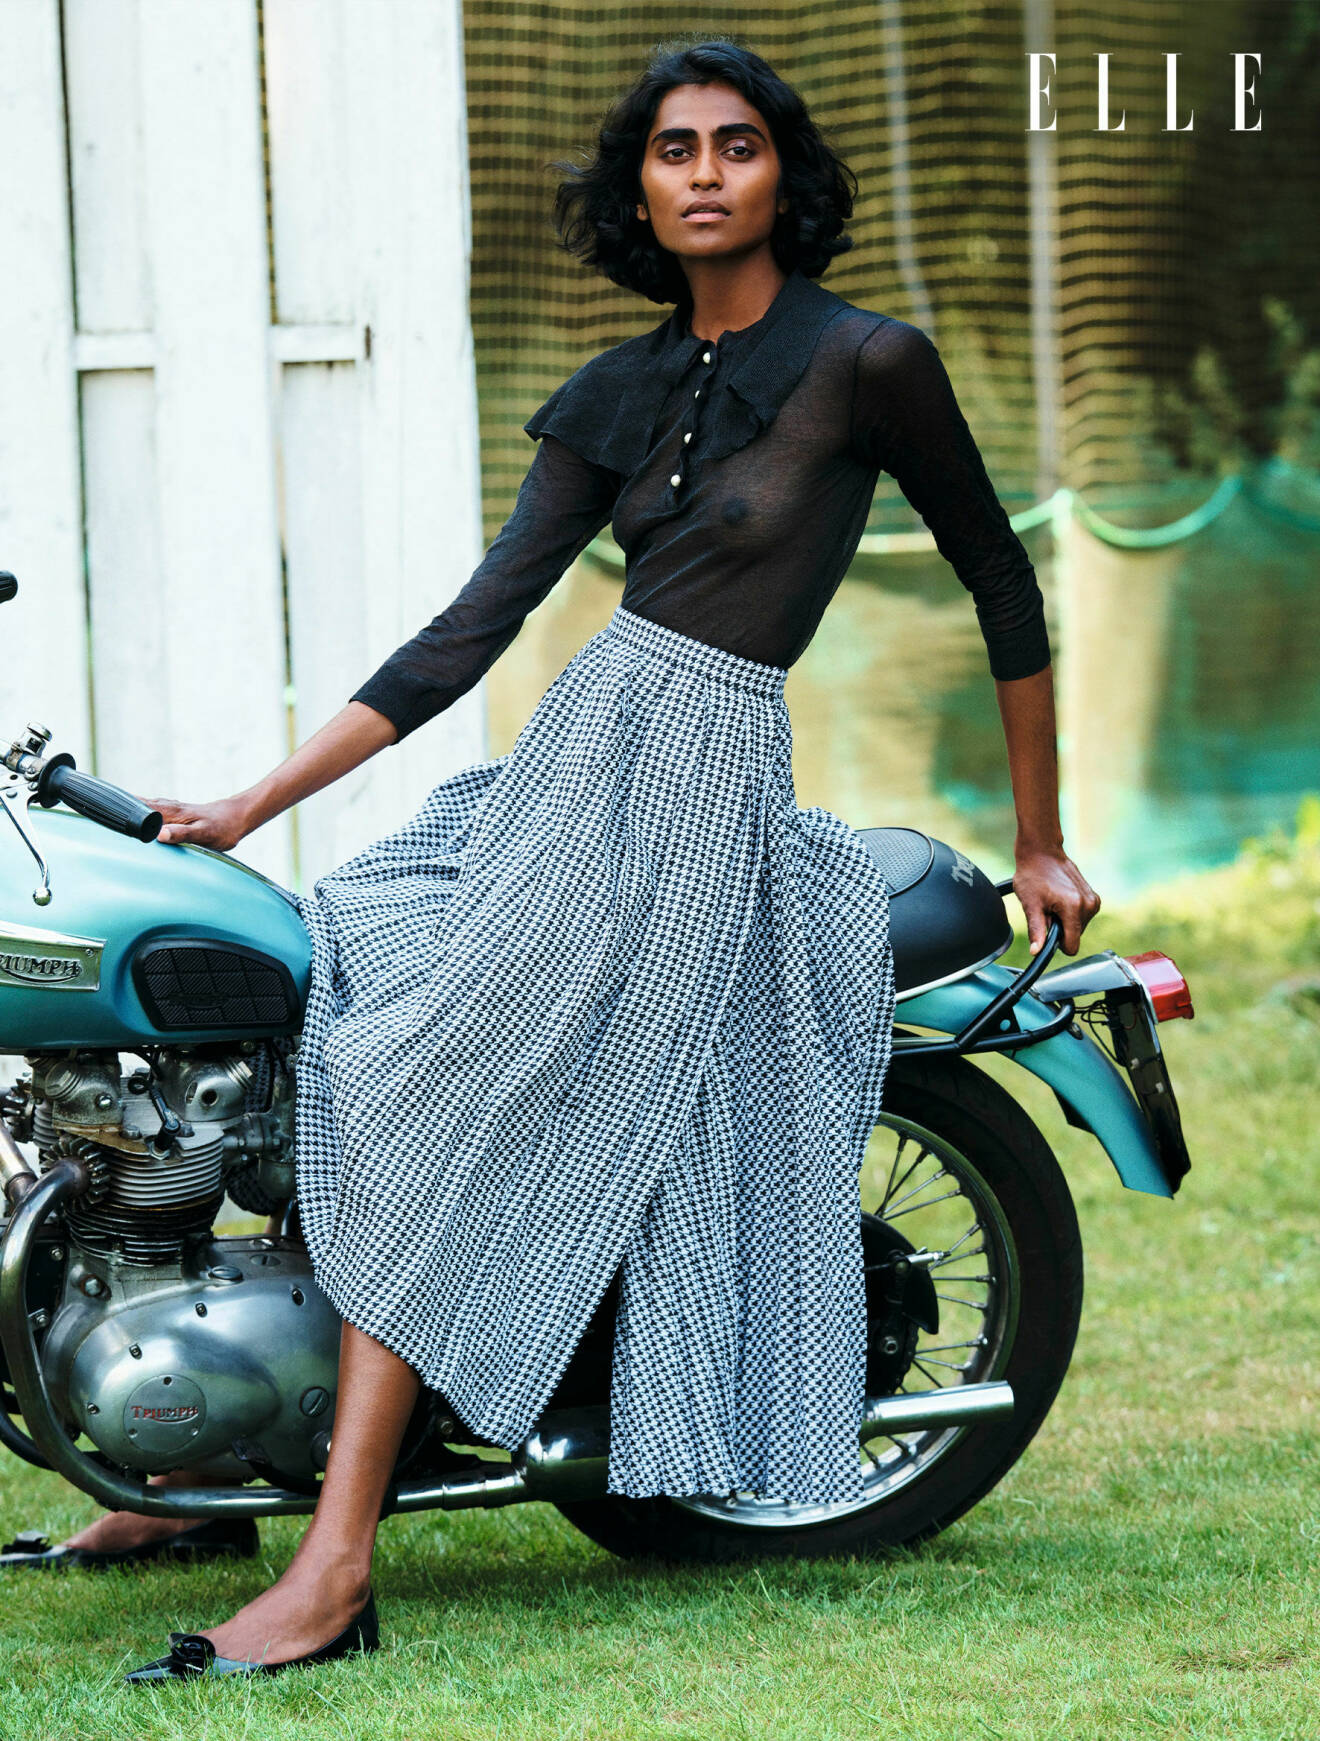 Modellen sitter på en motorcykel, hon har på sig en svart blus och lång smårutig kjol, allt från Dior.